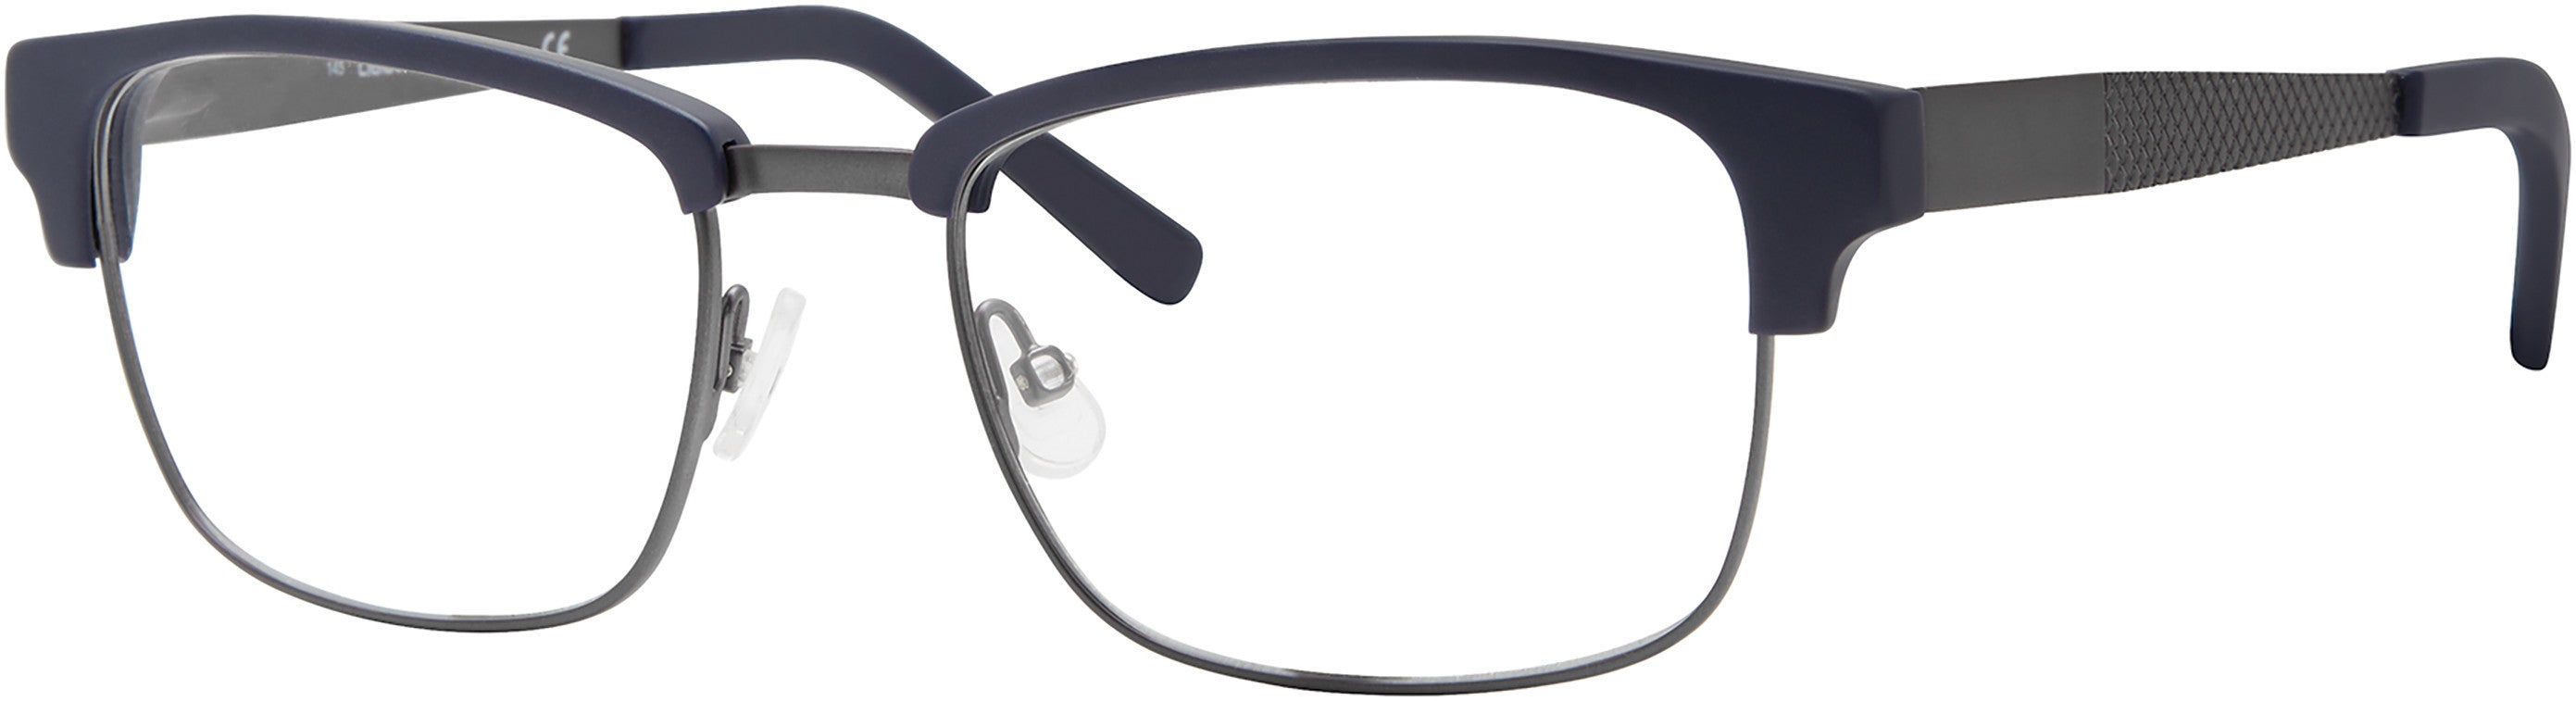  Claiborne 247 Rectangular Eyeglasses 0PJP-0PJP  Blue (00 Demo Lens)